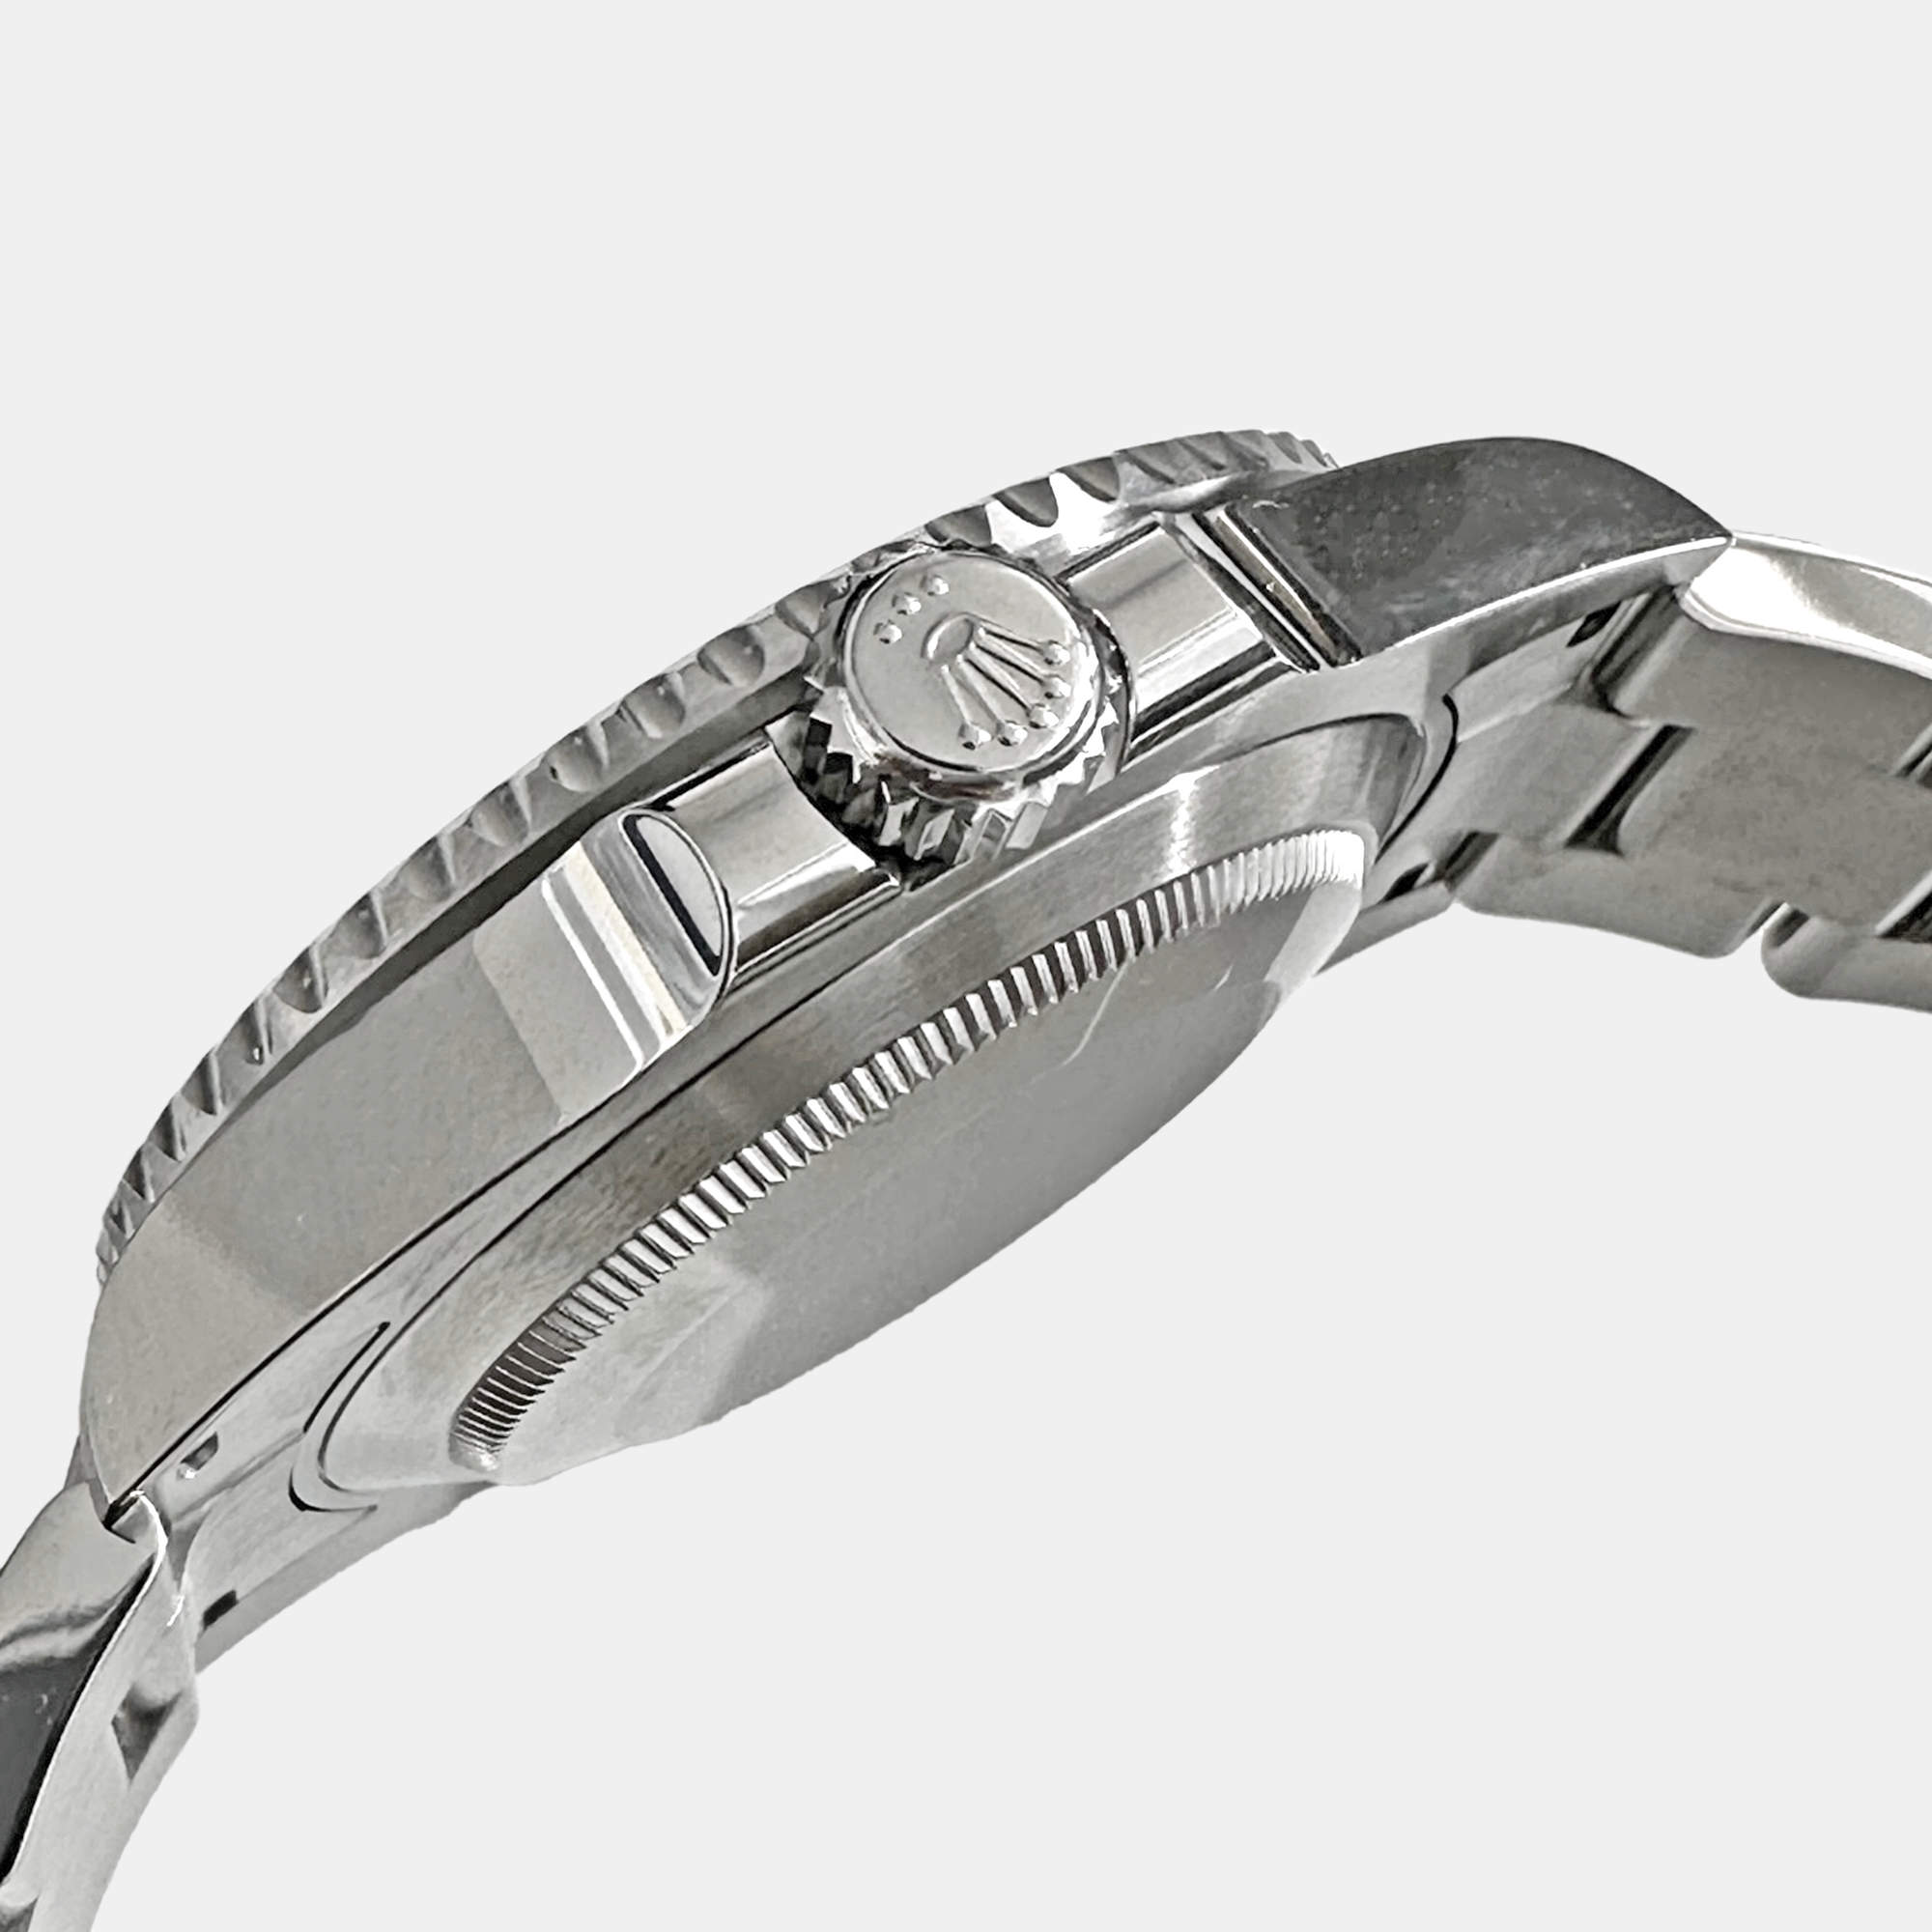 Rolex Submariner Date 126610lv 438p9066 Black Men's Wrist Watch